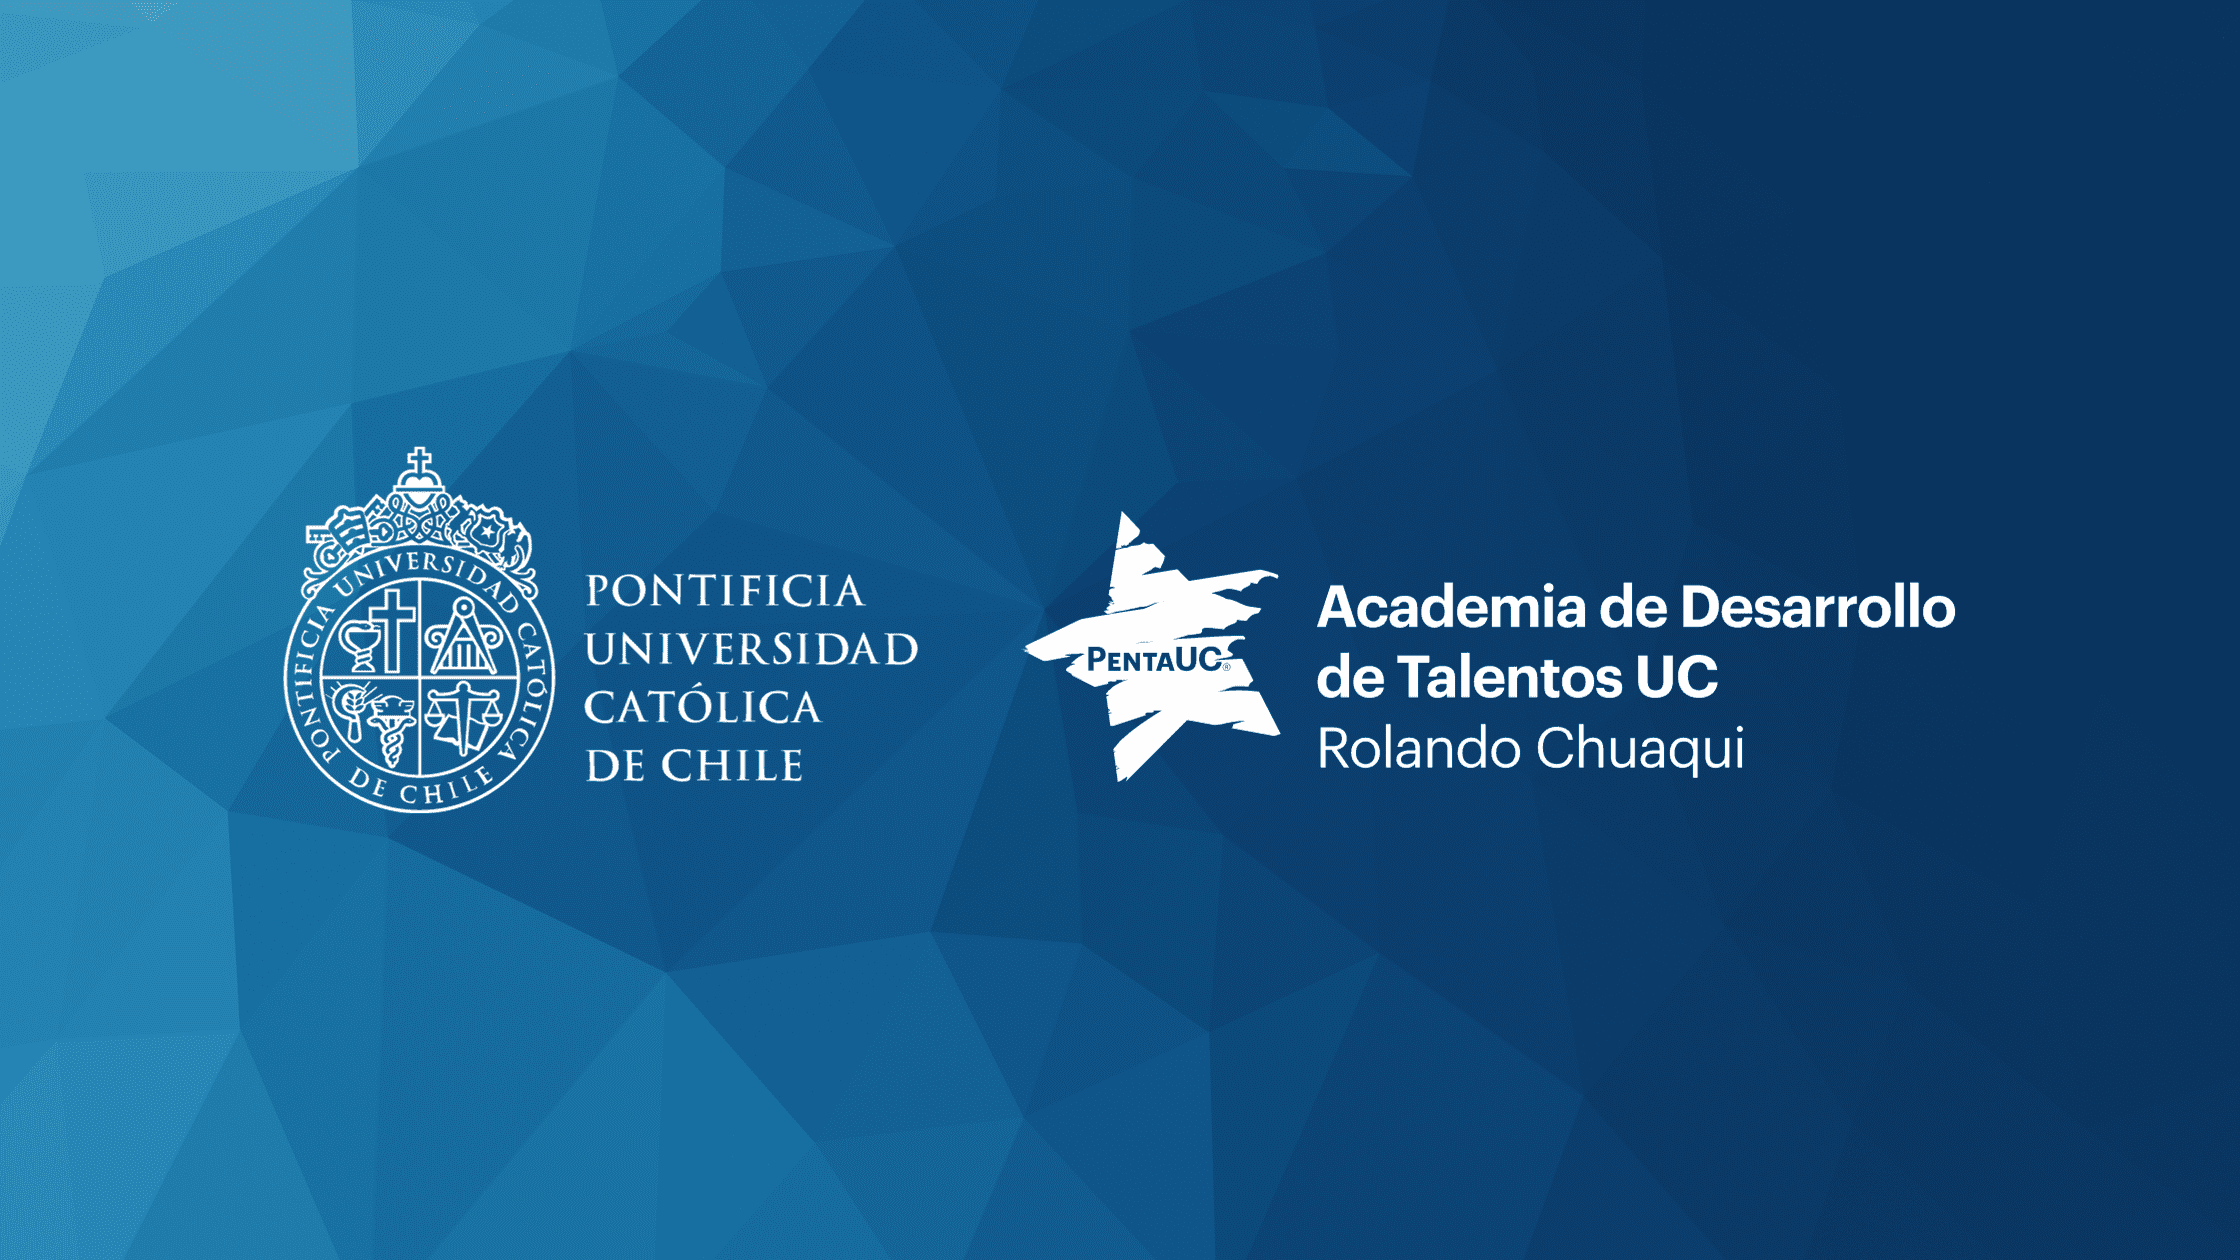 Imagen que contiene el logo de la UC y de la Academia de Desarrollo de Talentos UC Rolando Chuaqui, sobre un fondo azul en degradé. Derechos de imagen pertenecen a Penta UC.